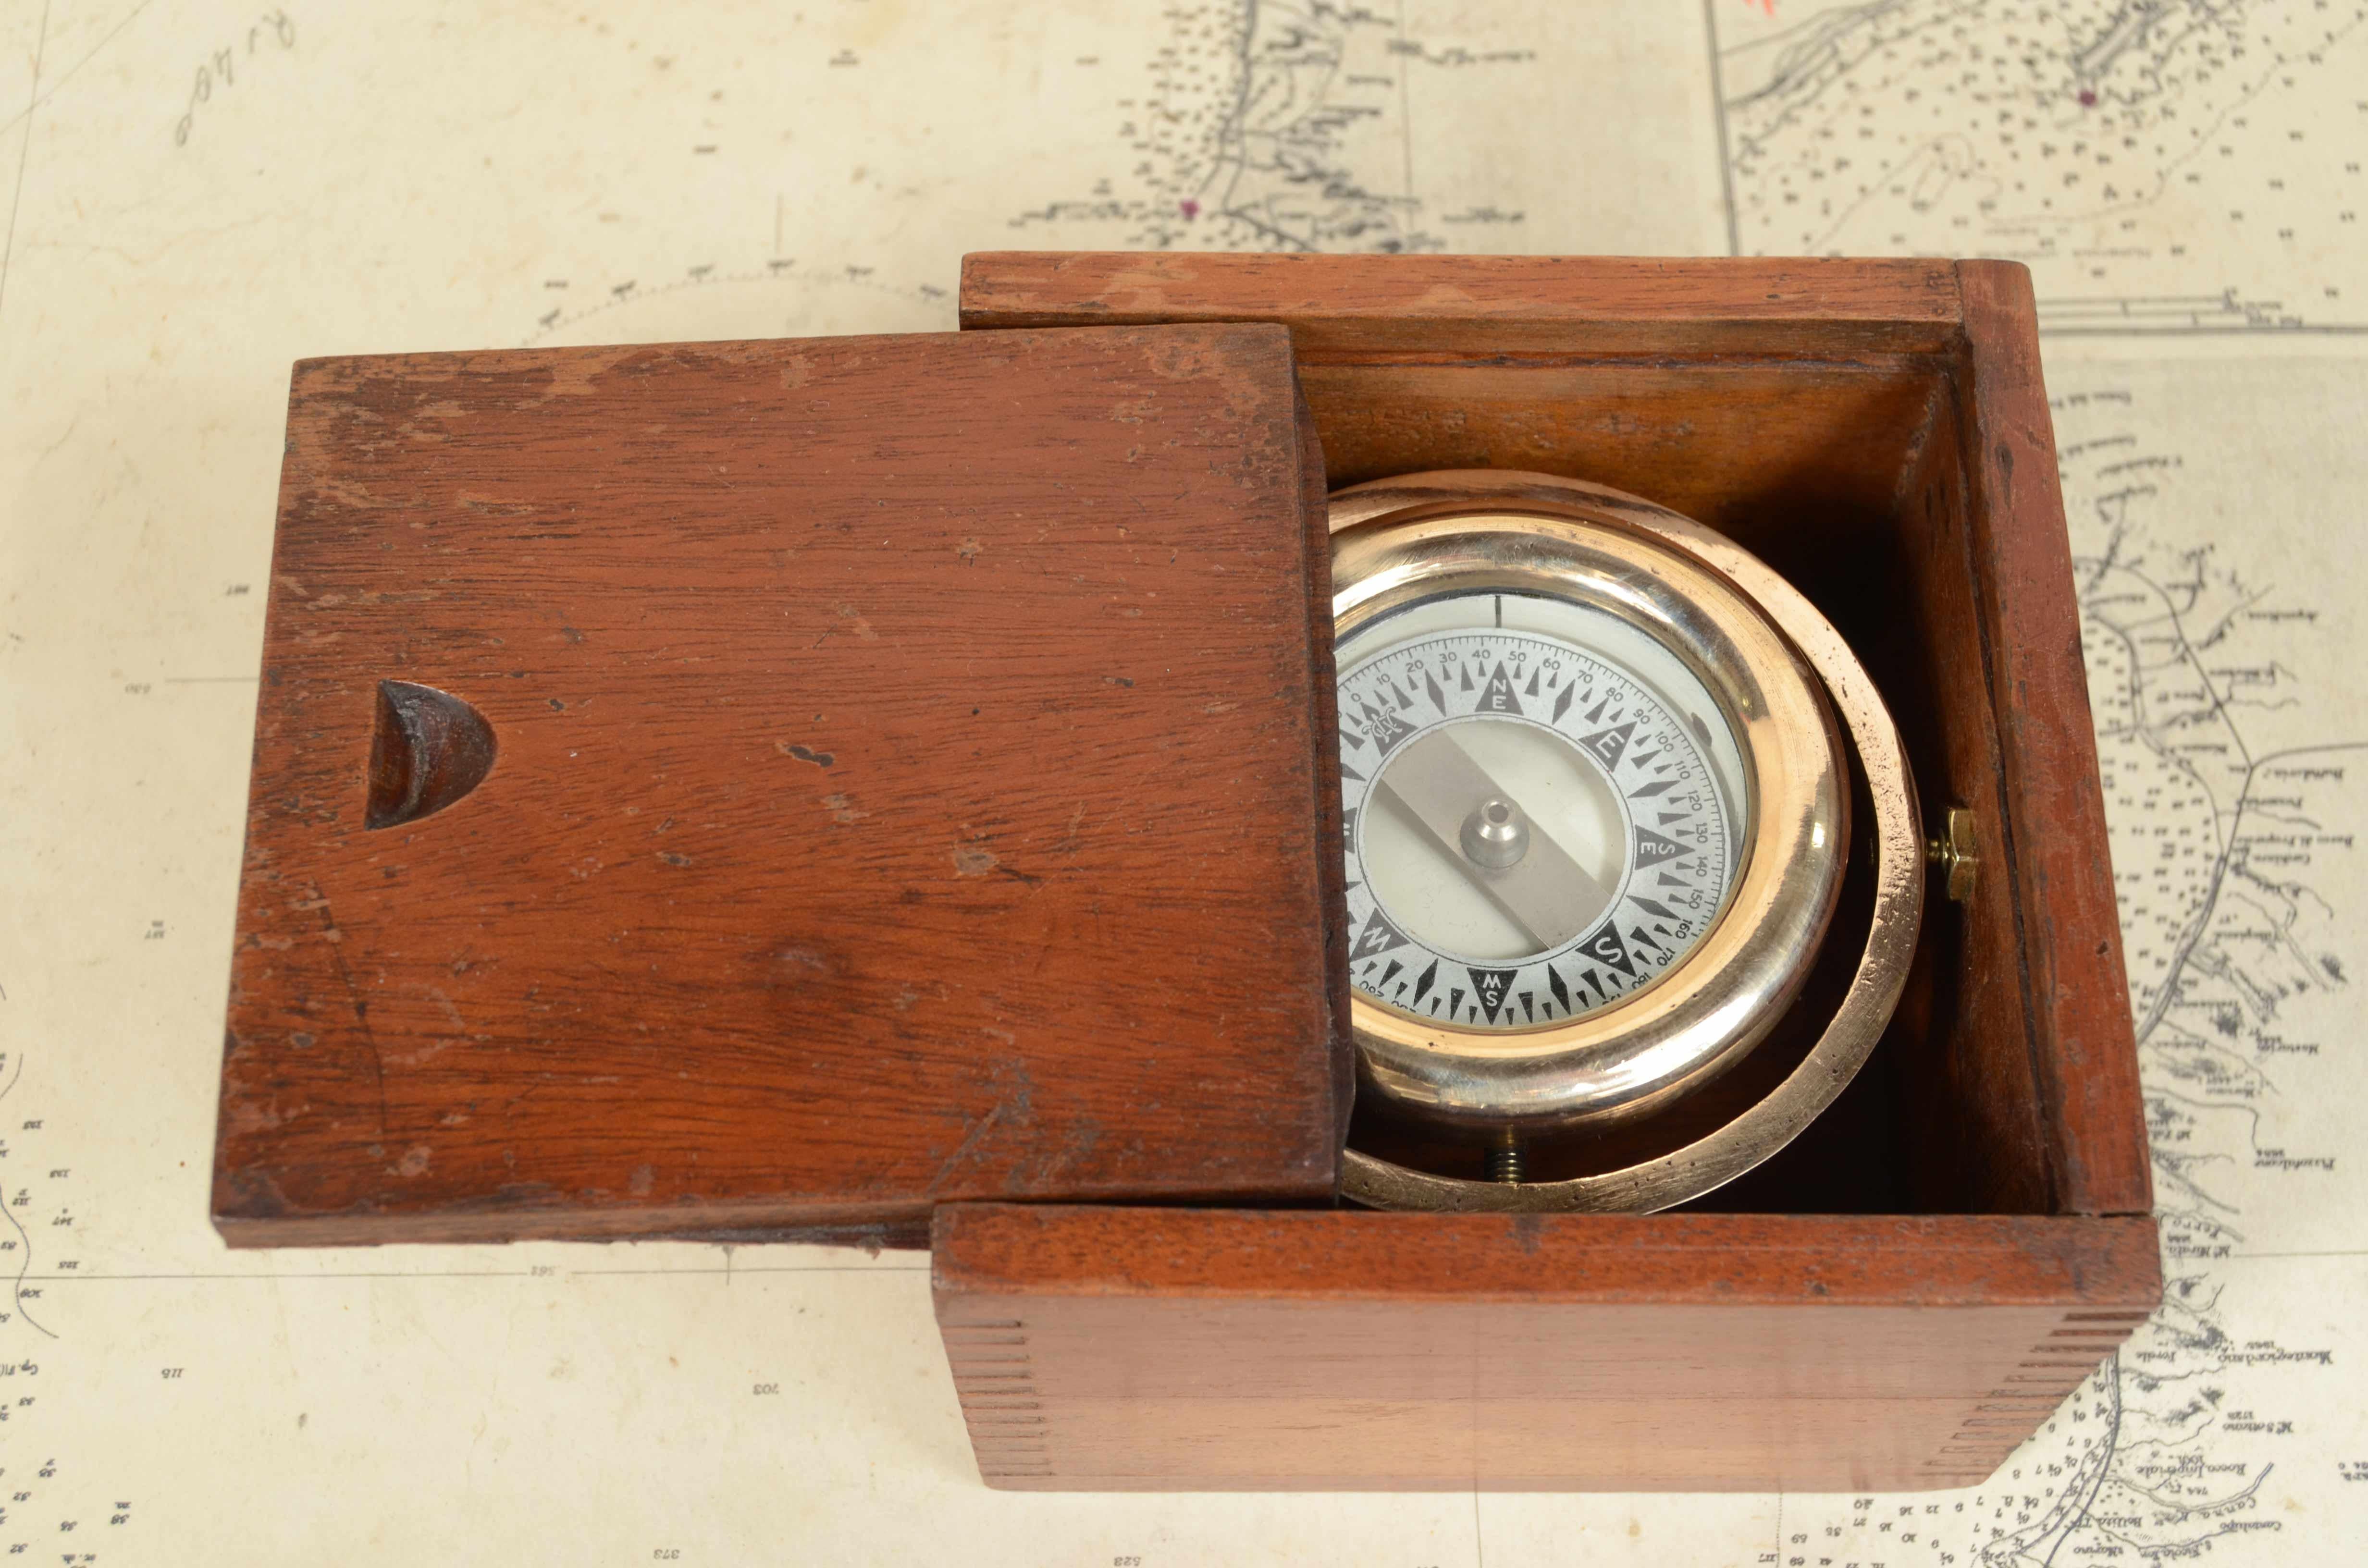 Nautischer Magnetkompass, hergestellt in den USA in den 1930er Jahren. 
Guter Zustand. Untergebracht in der Originalschachtel mit hölzernem Schlitzdeckel und montiert auf einem Kardangelenk.
Box misst 12x12x8,5 cm - Zoll 4,8x4,8x3,4.Guter Zustand